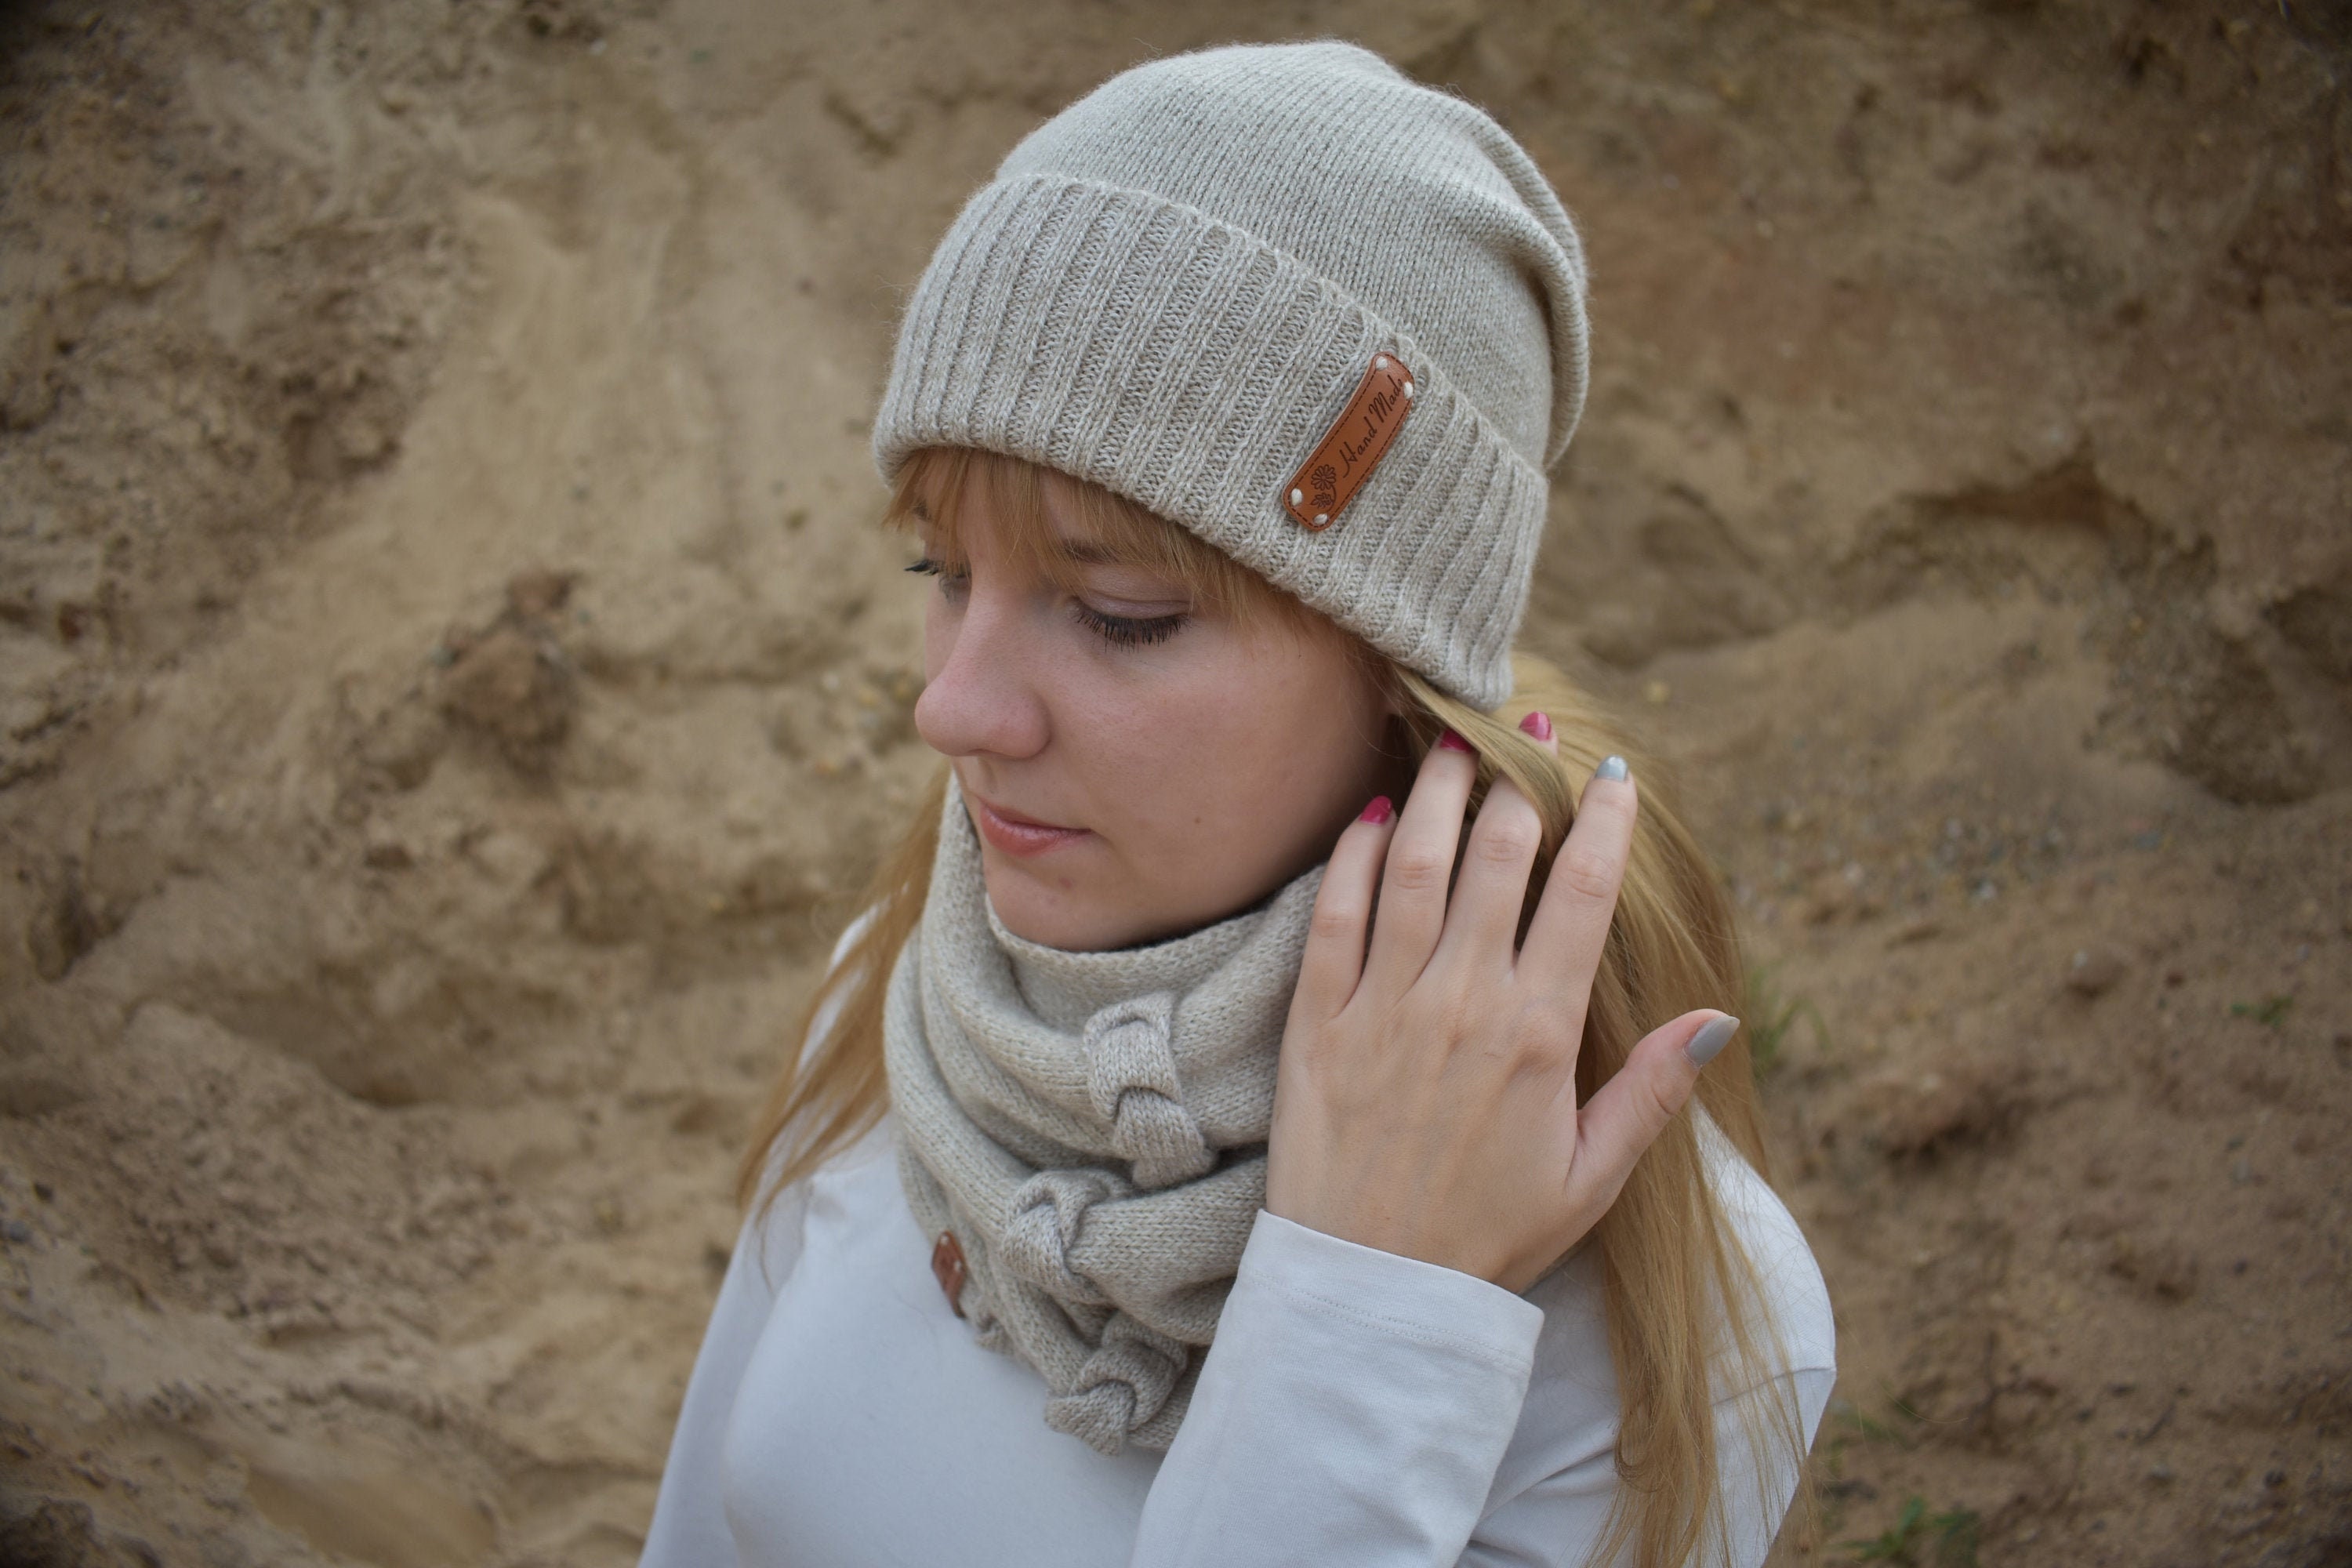 Bonnet d'hiver chaud bonnet en tricot femmes japonaises automne et hiver  laine résistante au froid garder chaud protection auditive unisexe